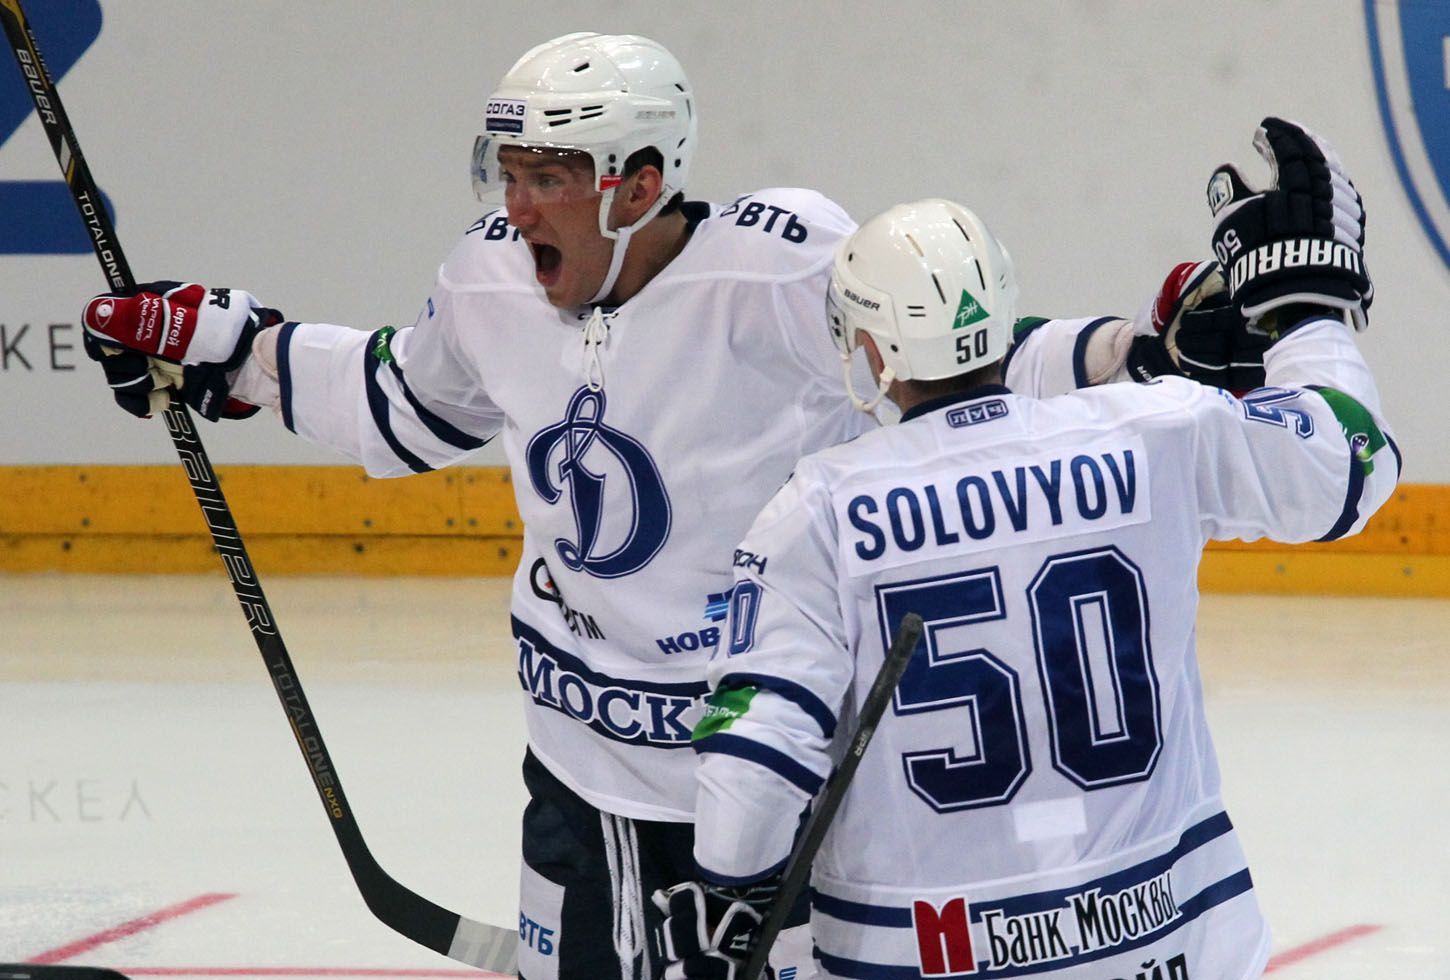 Hokejisté Dynama Moskva Alexandr Ovečkin (vlevo) a Maxim Solovjov slaví gól v utkání KHL 2012/13 proti Lvu Praha.